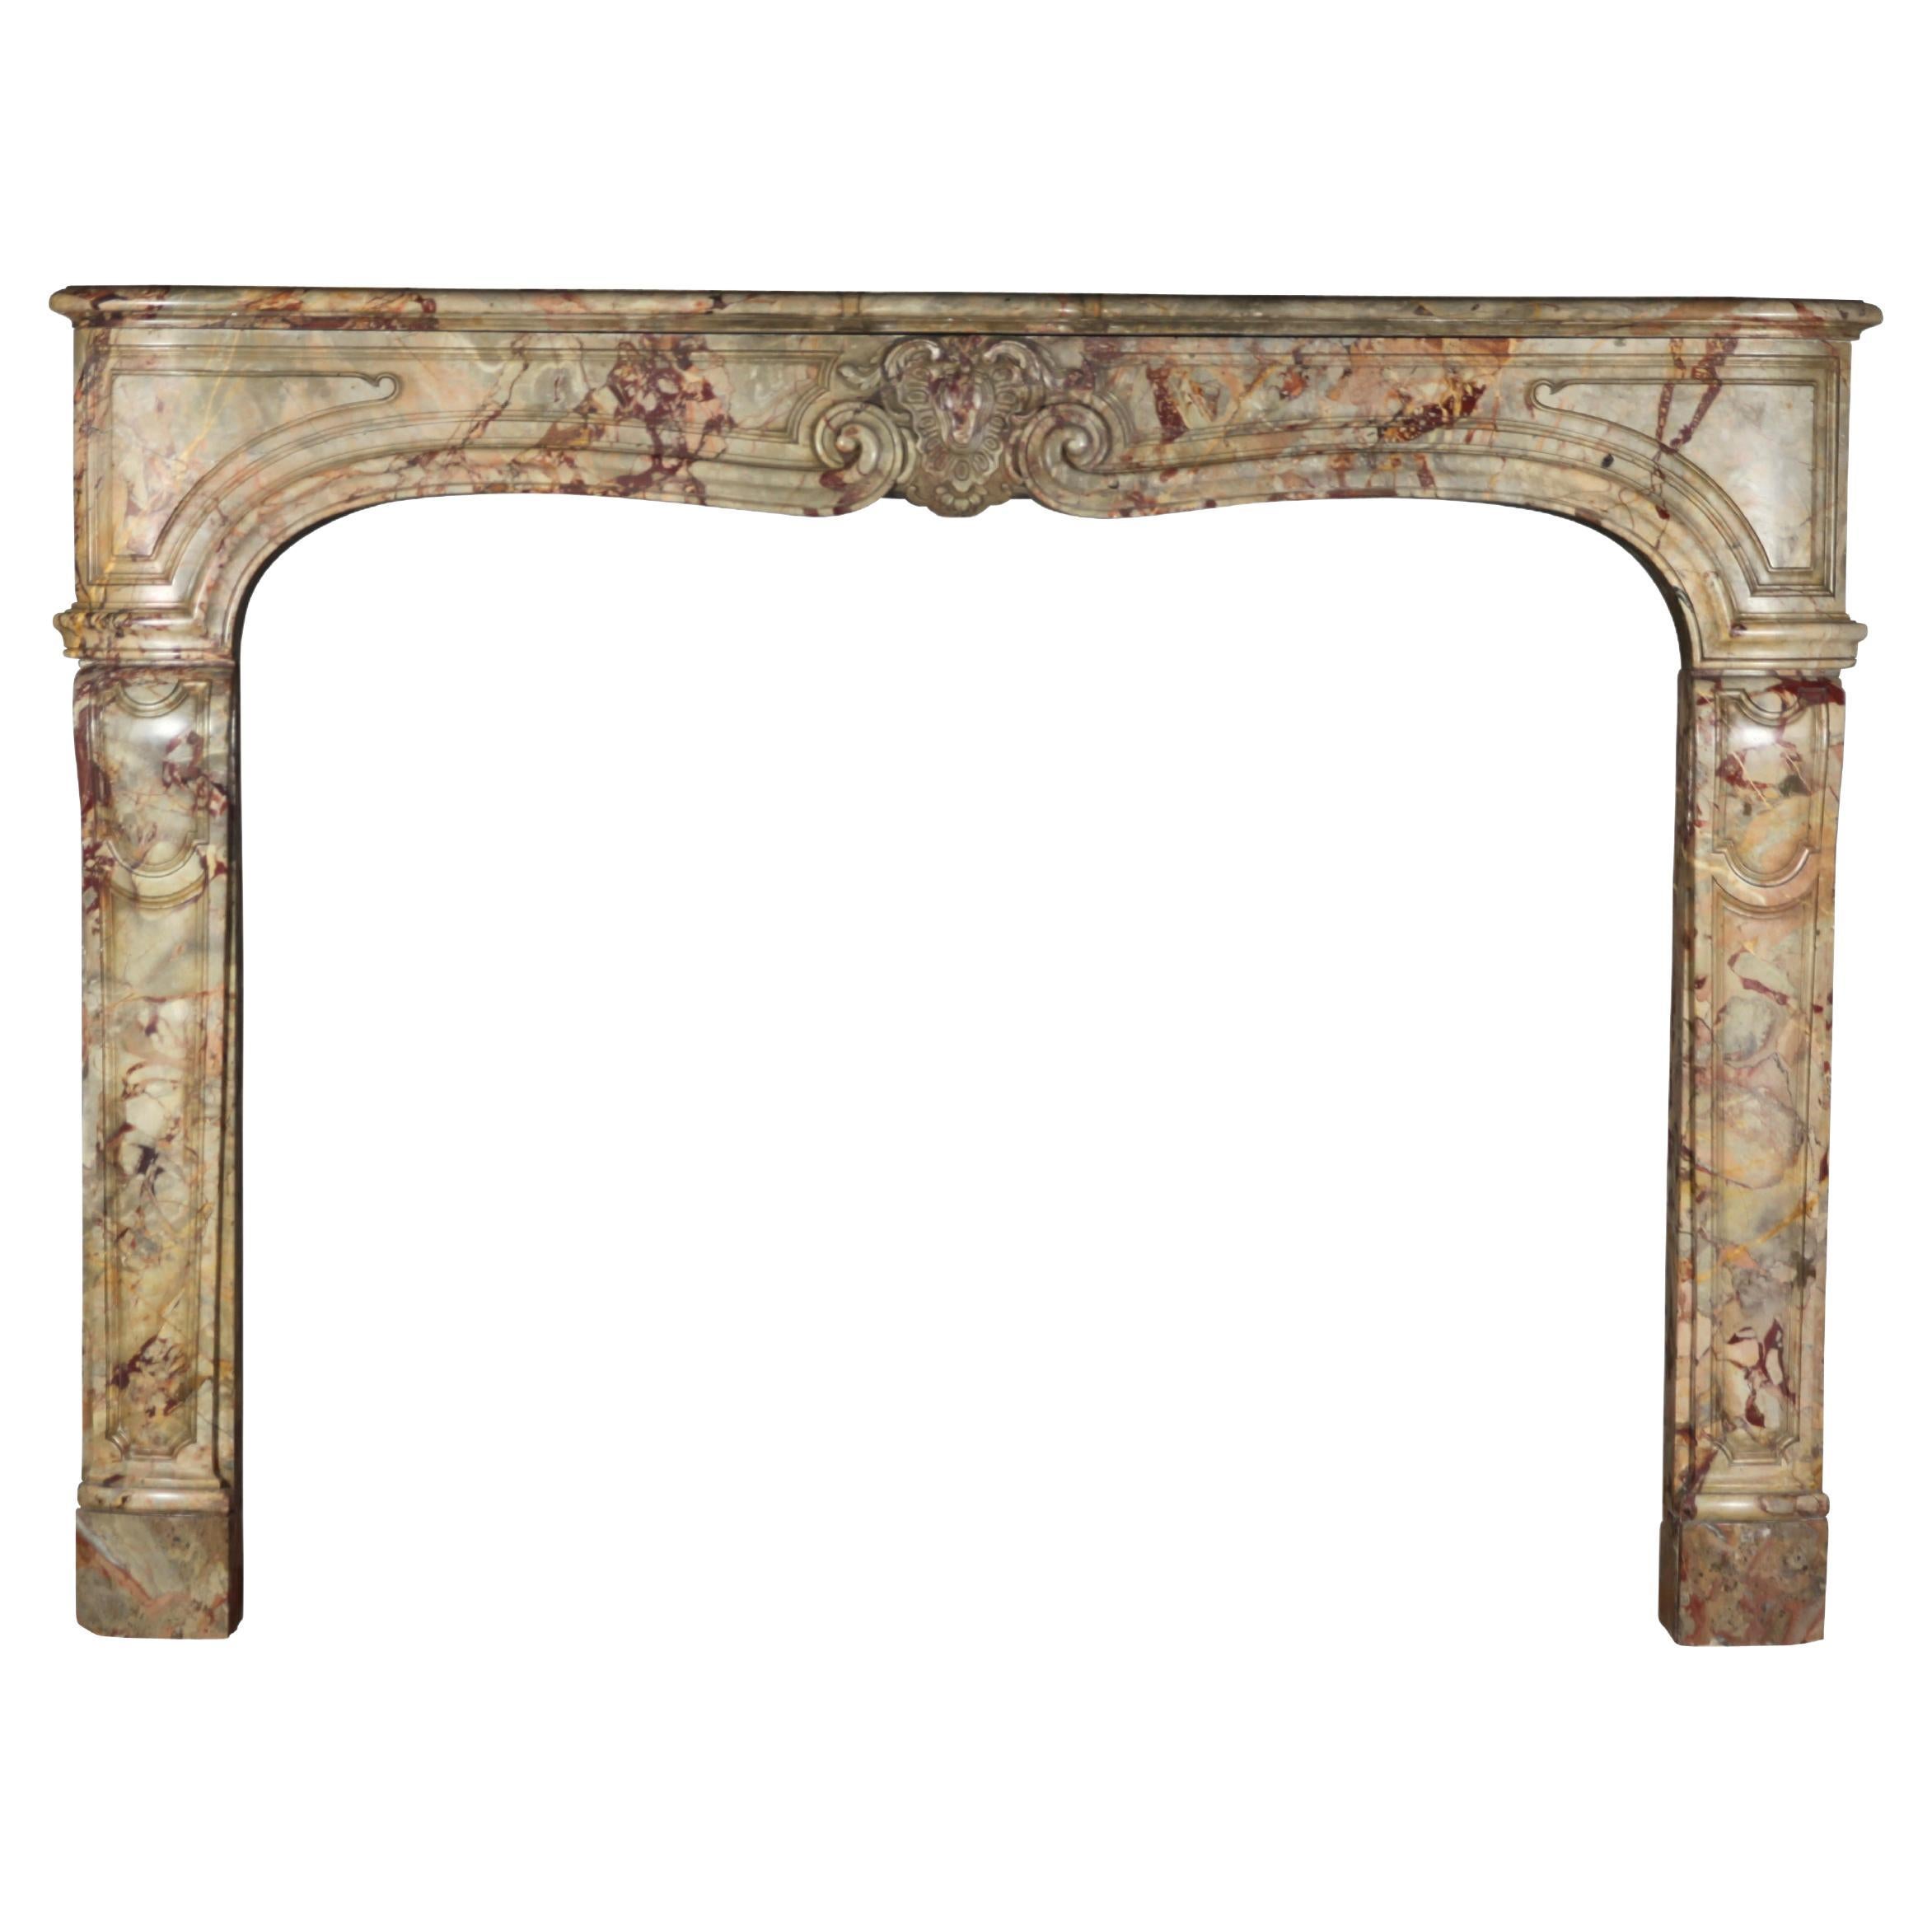 Classic Parisian Interior Design Original Antique Marble Fireplace Surround For Sale